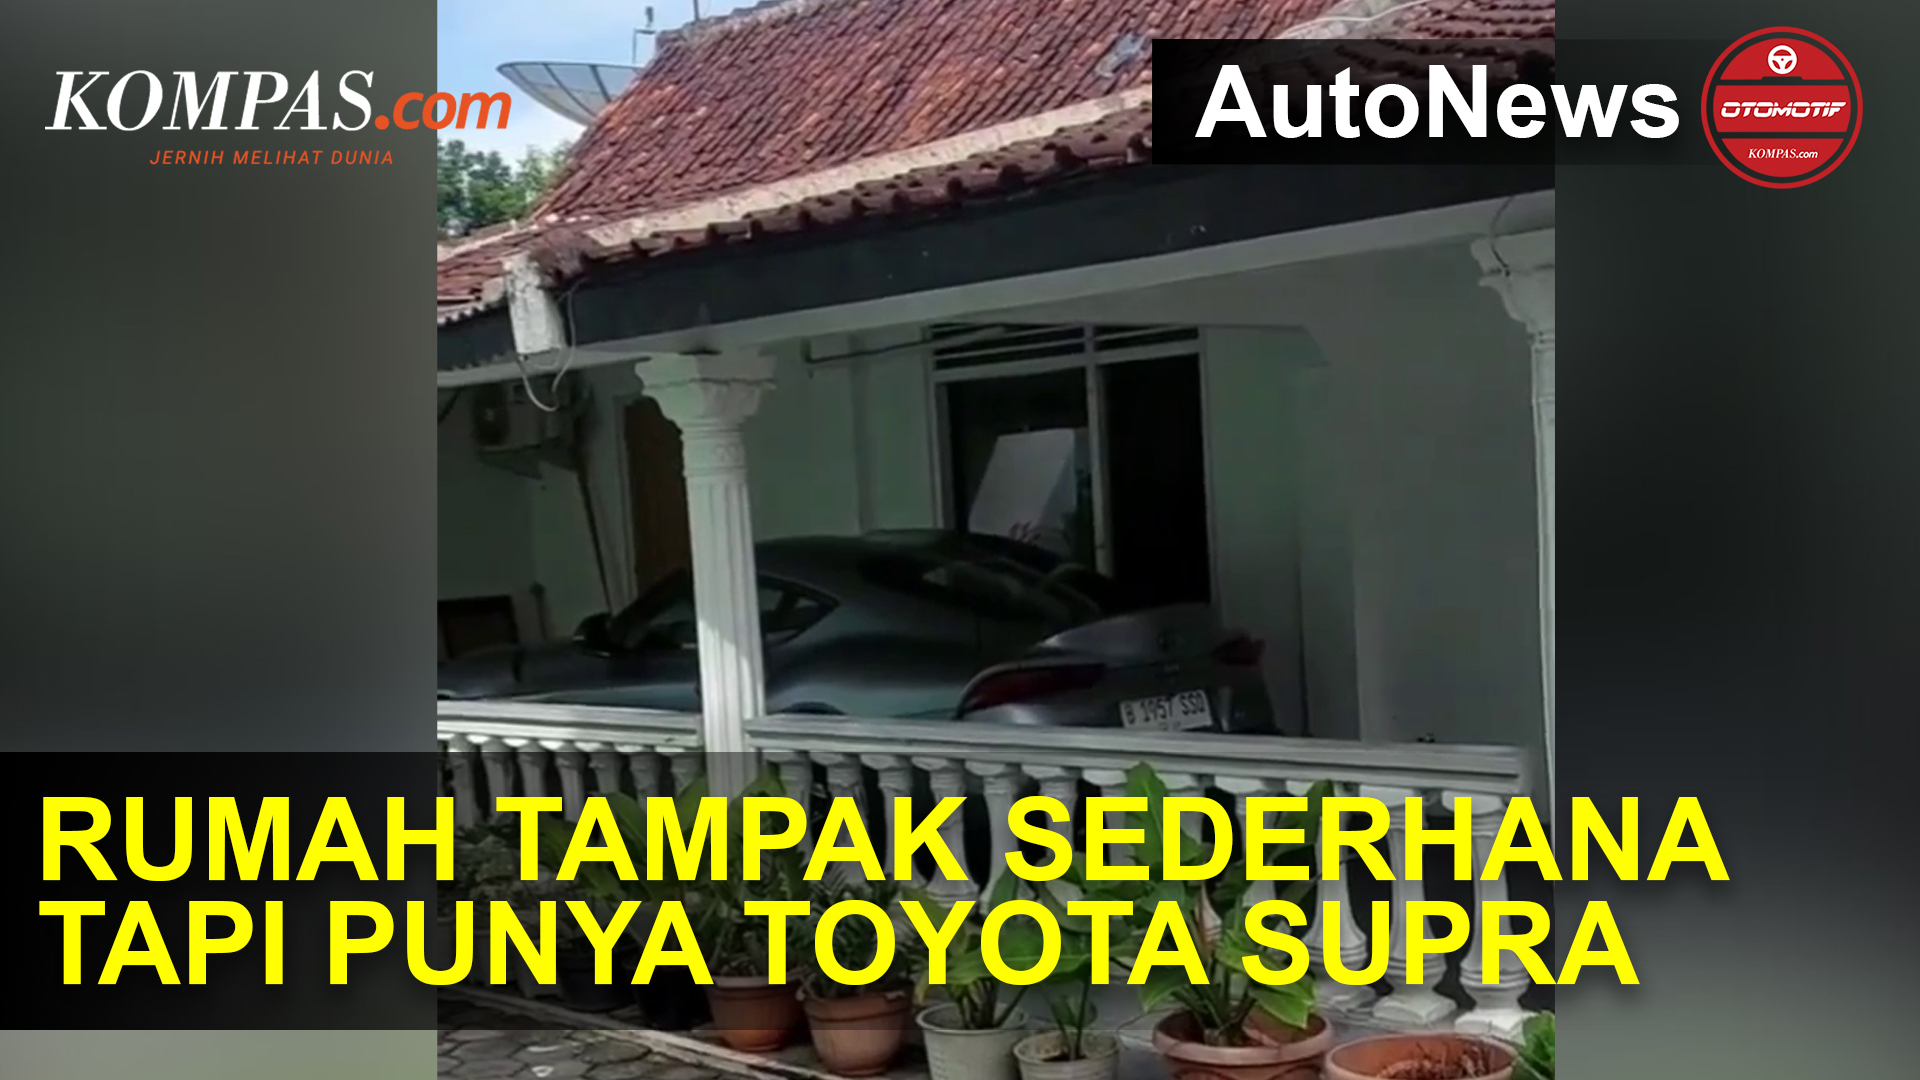 Video Viral, Rumah Tampak Sederhana tapi Punya Mobil Toyota Supra